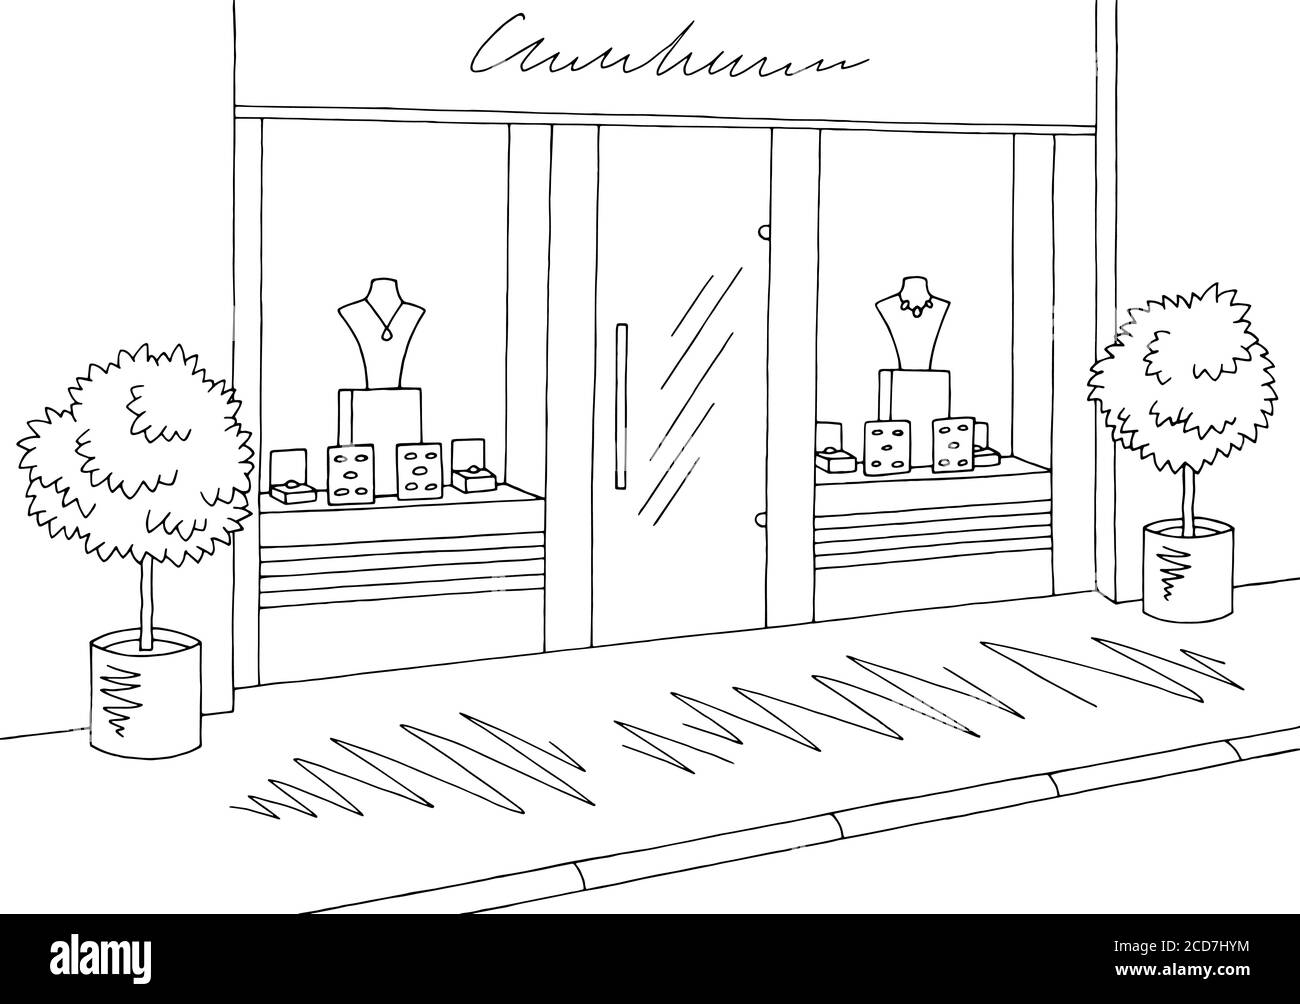 Schmuck Shop Geschäft außen Grafik schwarz weiß Skizze Illustration Vektor Stock Vektor